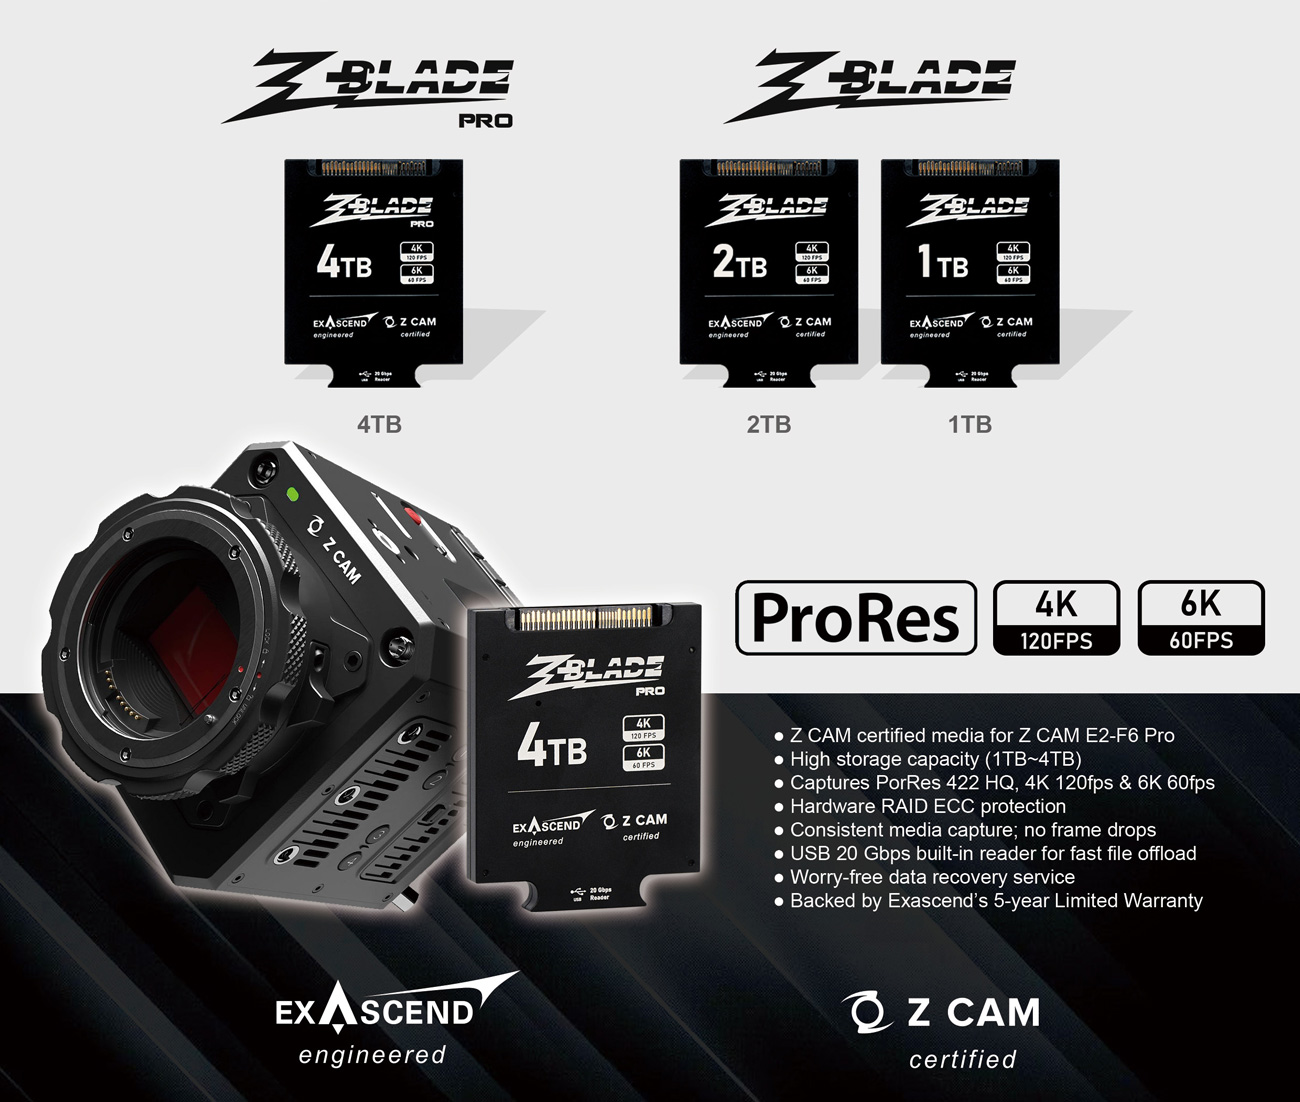 ổ cứng ssd exascend zblade dành cho máy quay z cam